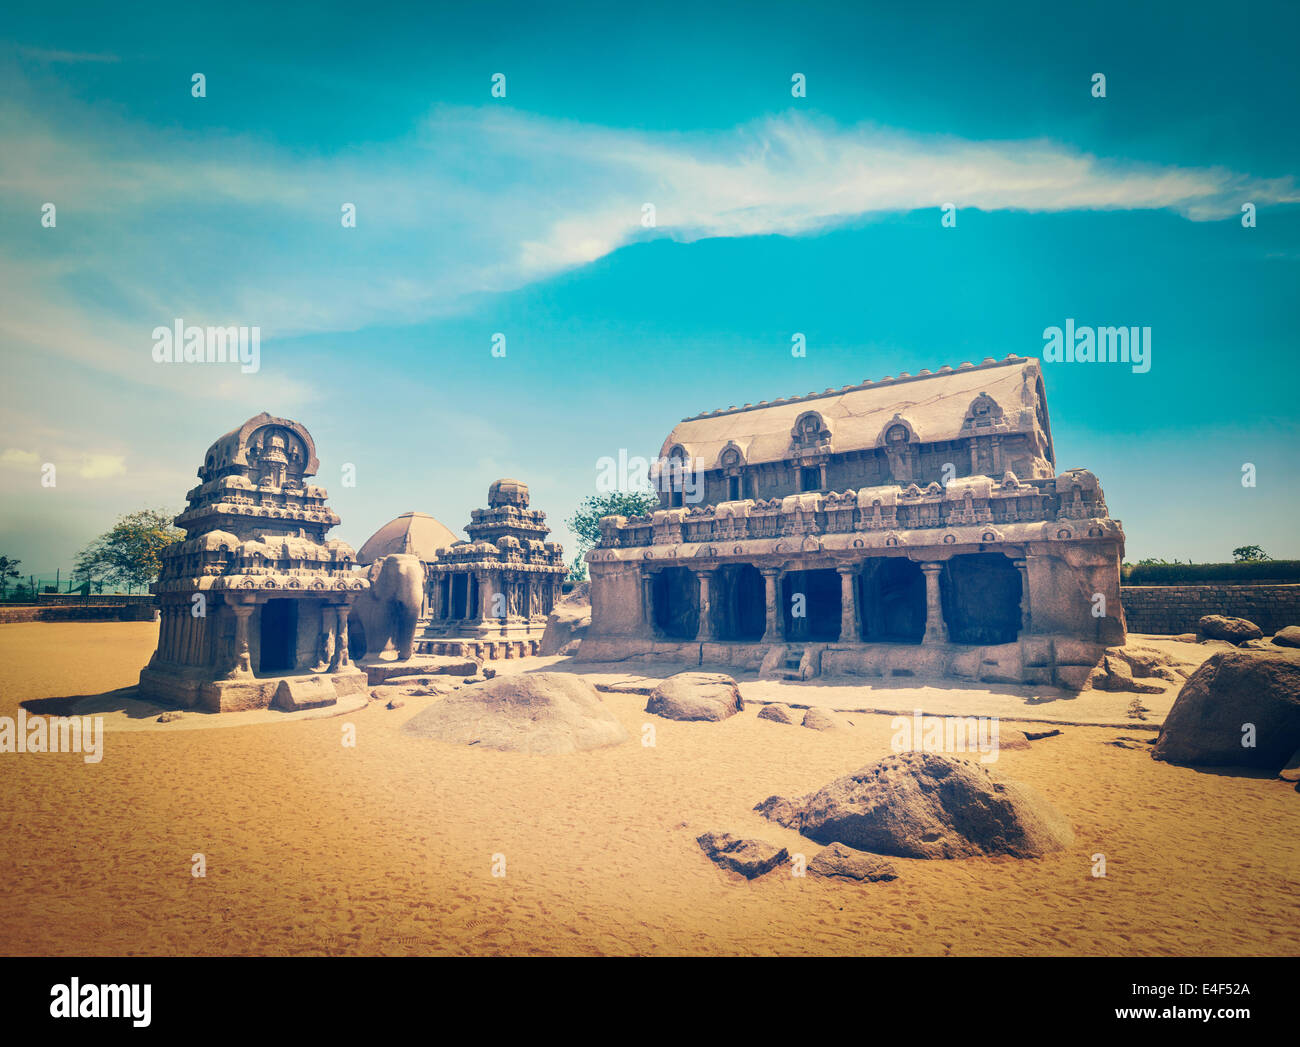 Vintage retrò hipster stile immagine di viaggio di cinque Rathas - antico indù indiano monolitico rock-cut architettura. Mahabalipuram Foto Stock